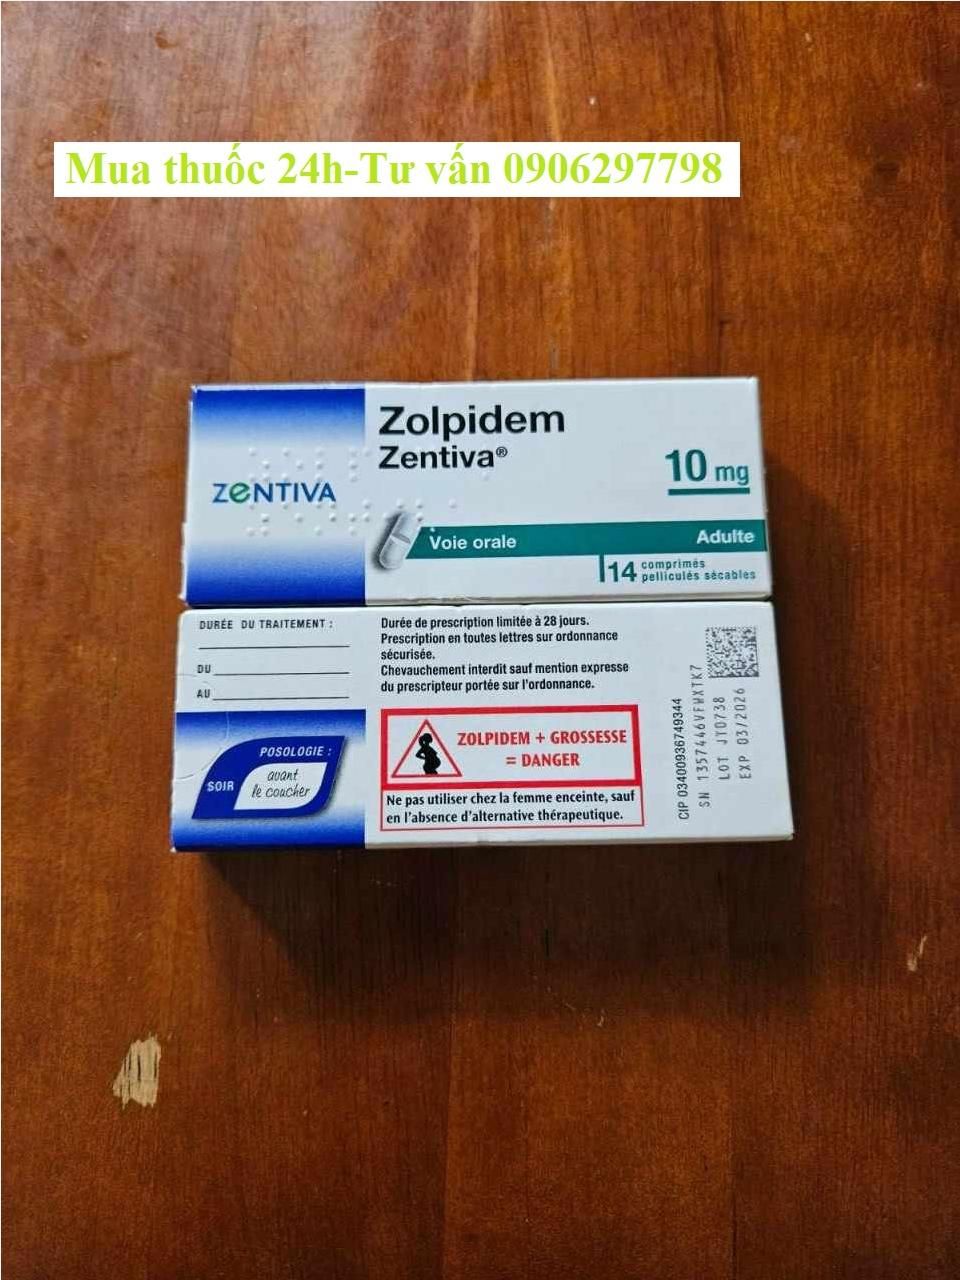 Thuốc Zolpidem Zentiva 10mg giá bao nhiêu mua ở đâu?